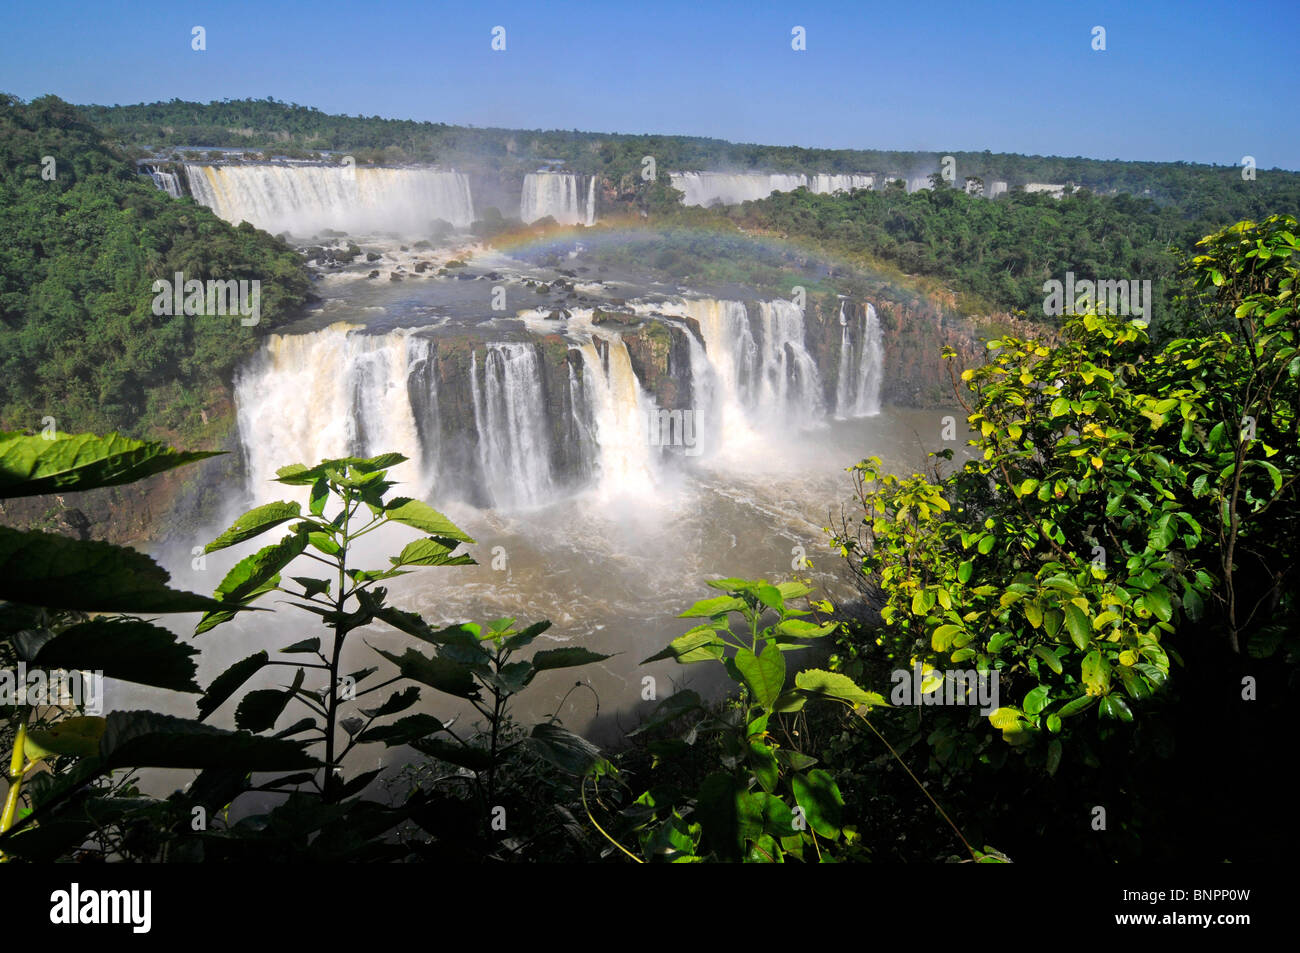 Les chutes d'Iguazu, l'un des pays d'Amérique latine les plus impressionnantes merveilles naturelles. Banque D'Images